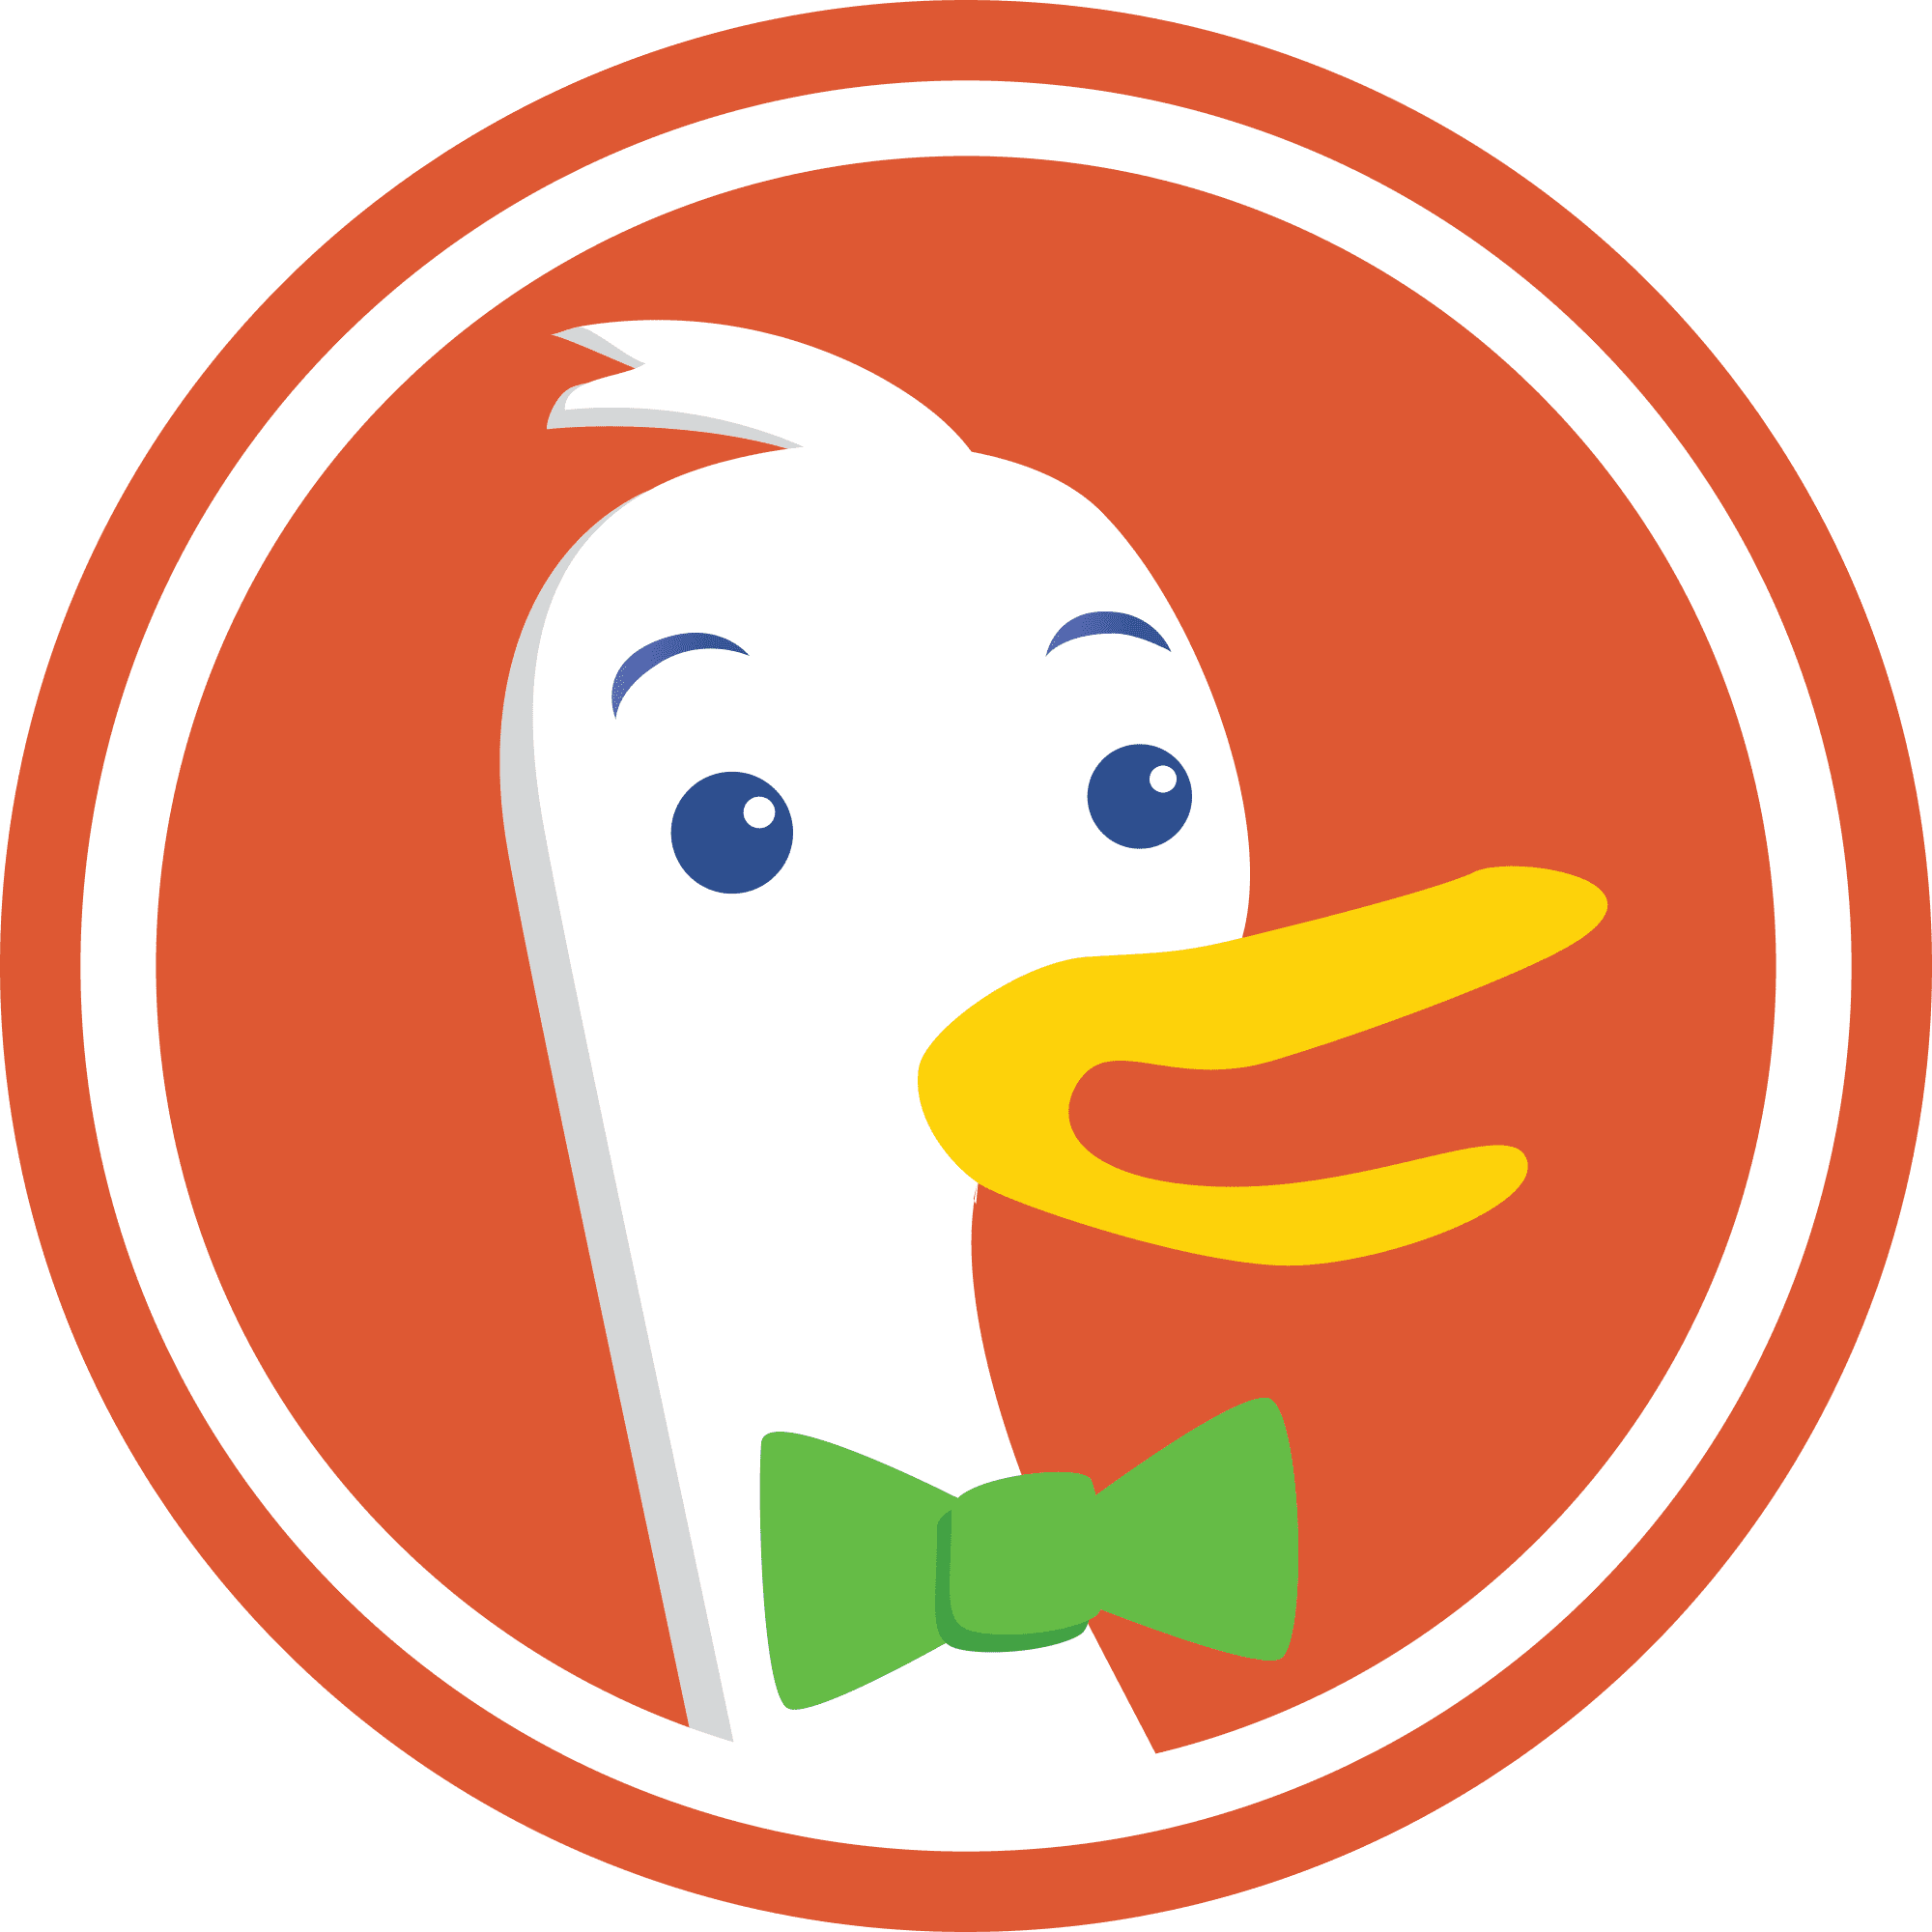 DuckDuckGo Transparent Logo PNG